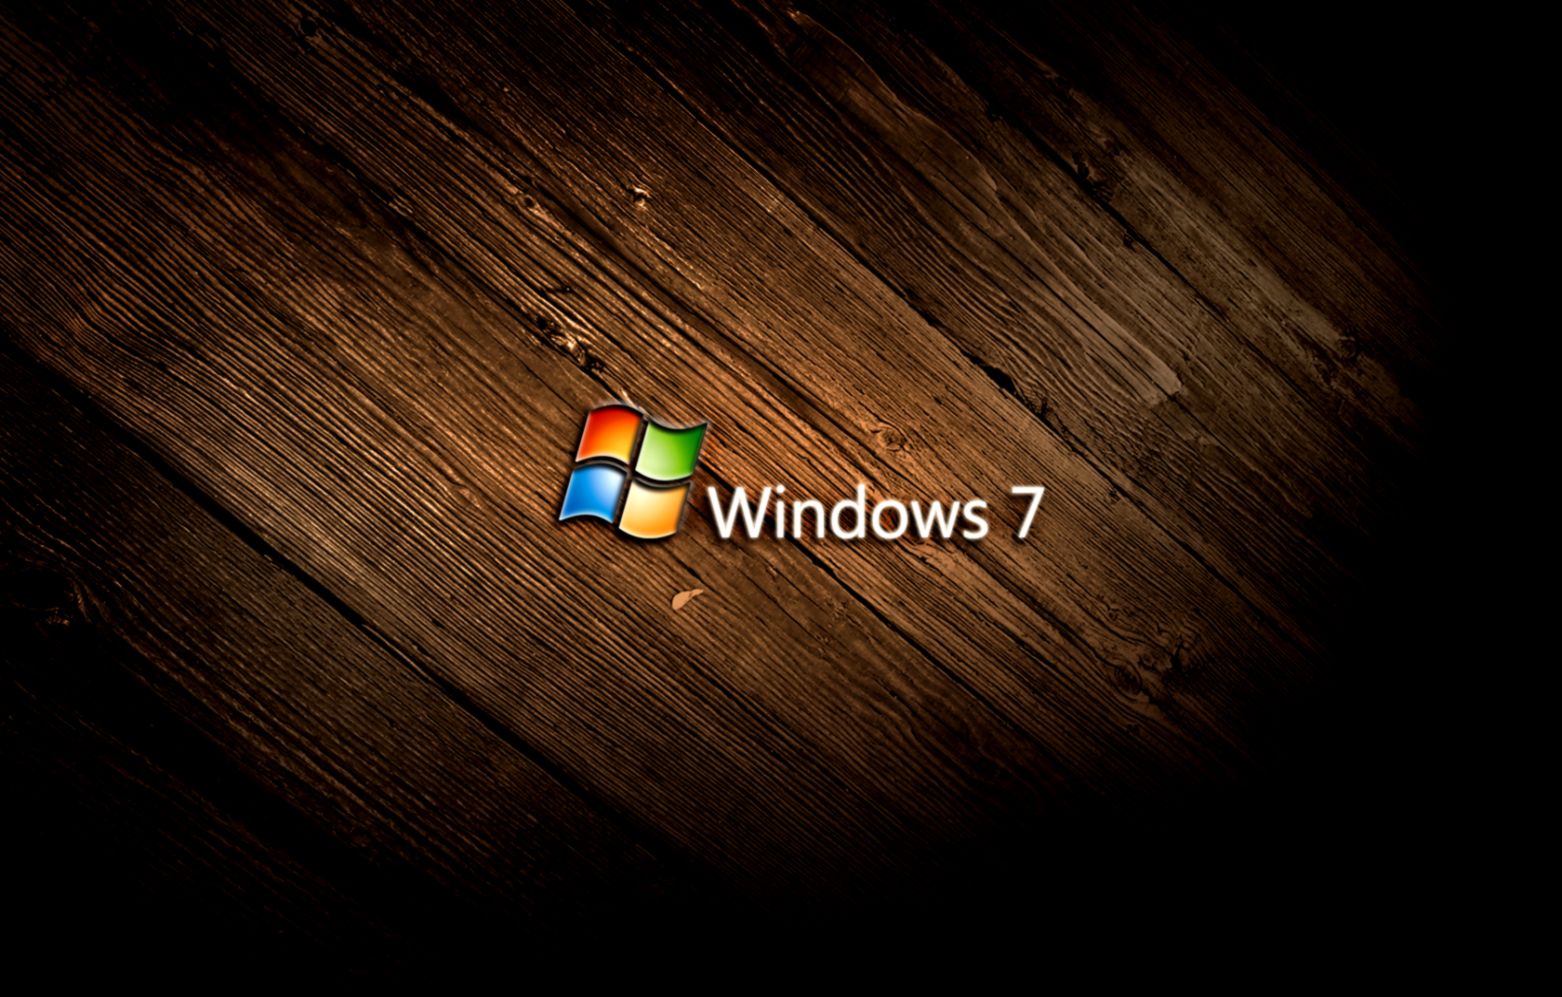 Hình nền Windows 7 đẹp mắt giúp truyền tải một sự sống động và tươi mới cho màn hình máy tính của bạn. Khám phá ngay để có trải nghiệm mới lạ và độc đáo!